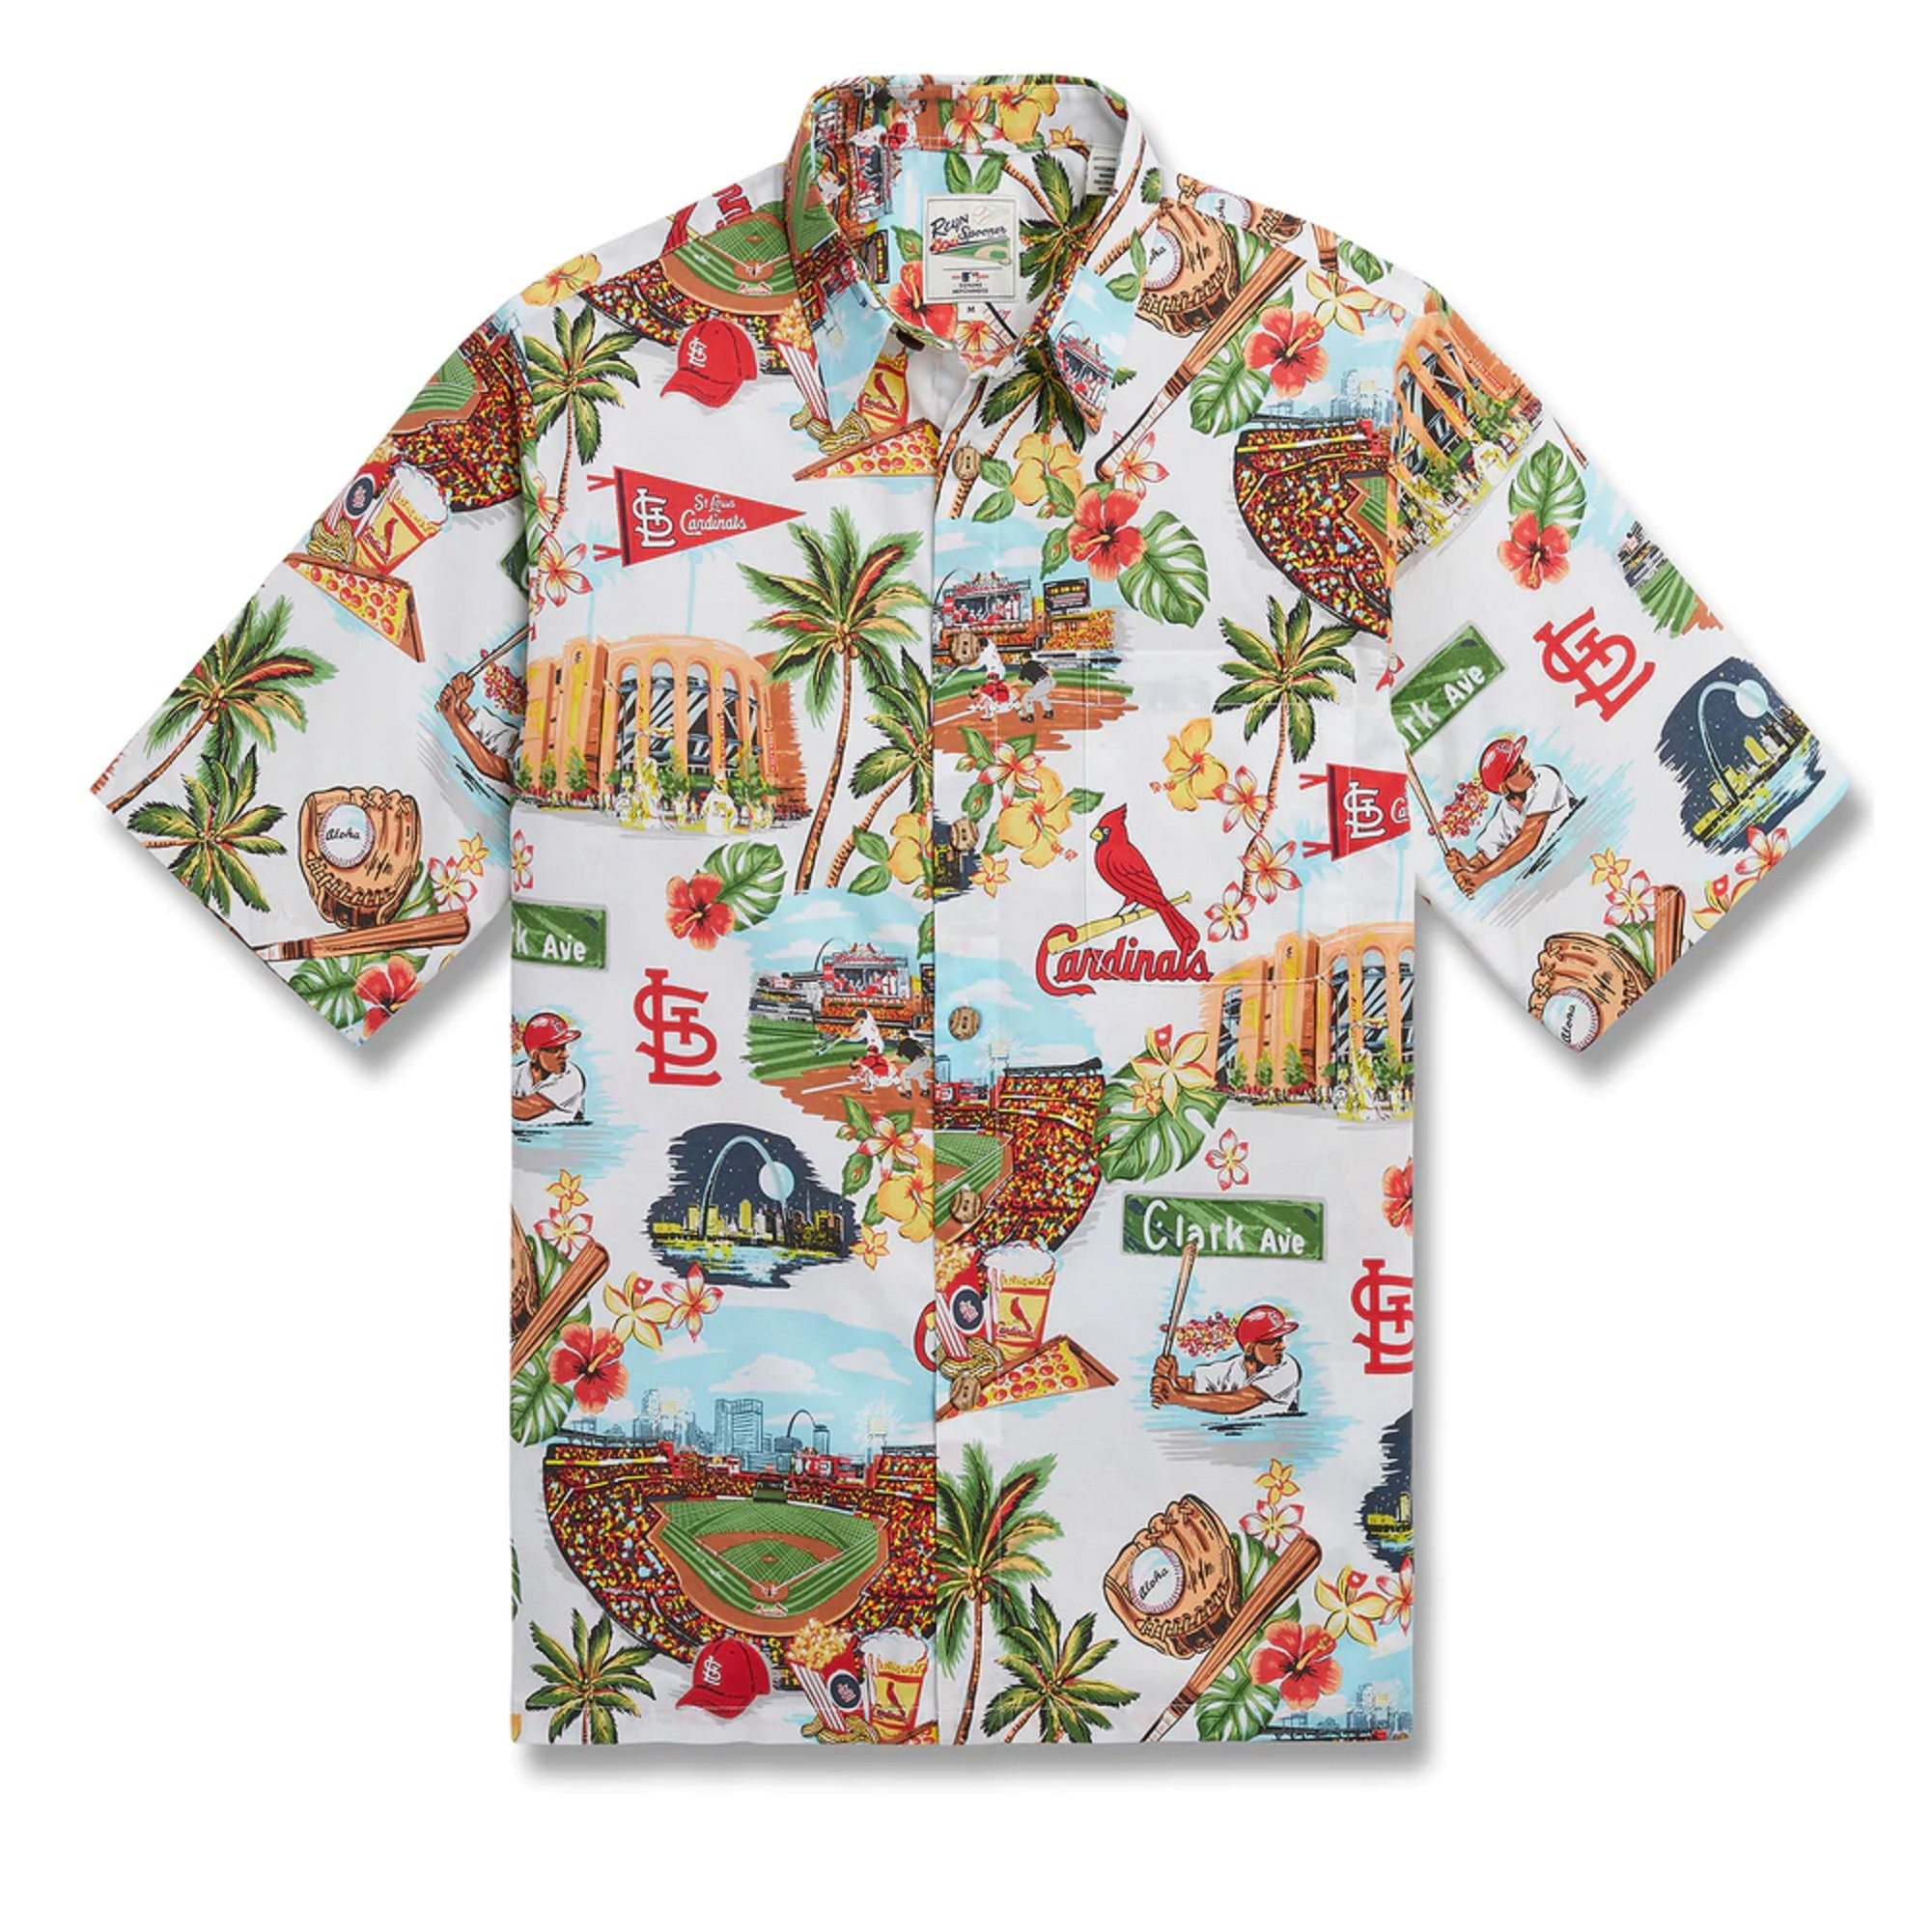 Louisville Cardinals Baby Yoda Lover Tropical Style Hawaiian Shirt And  Shorts - Banantees